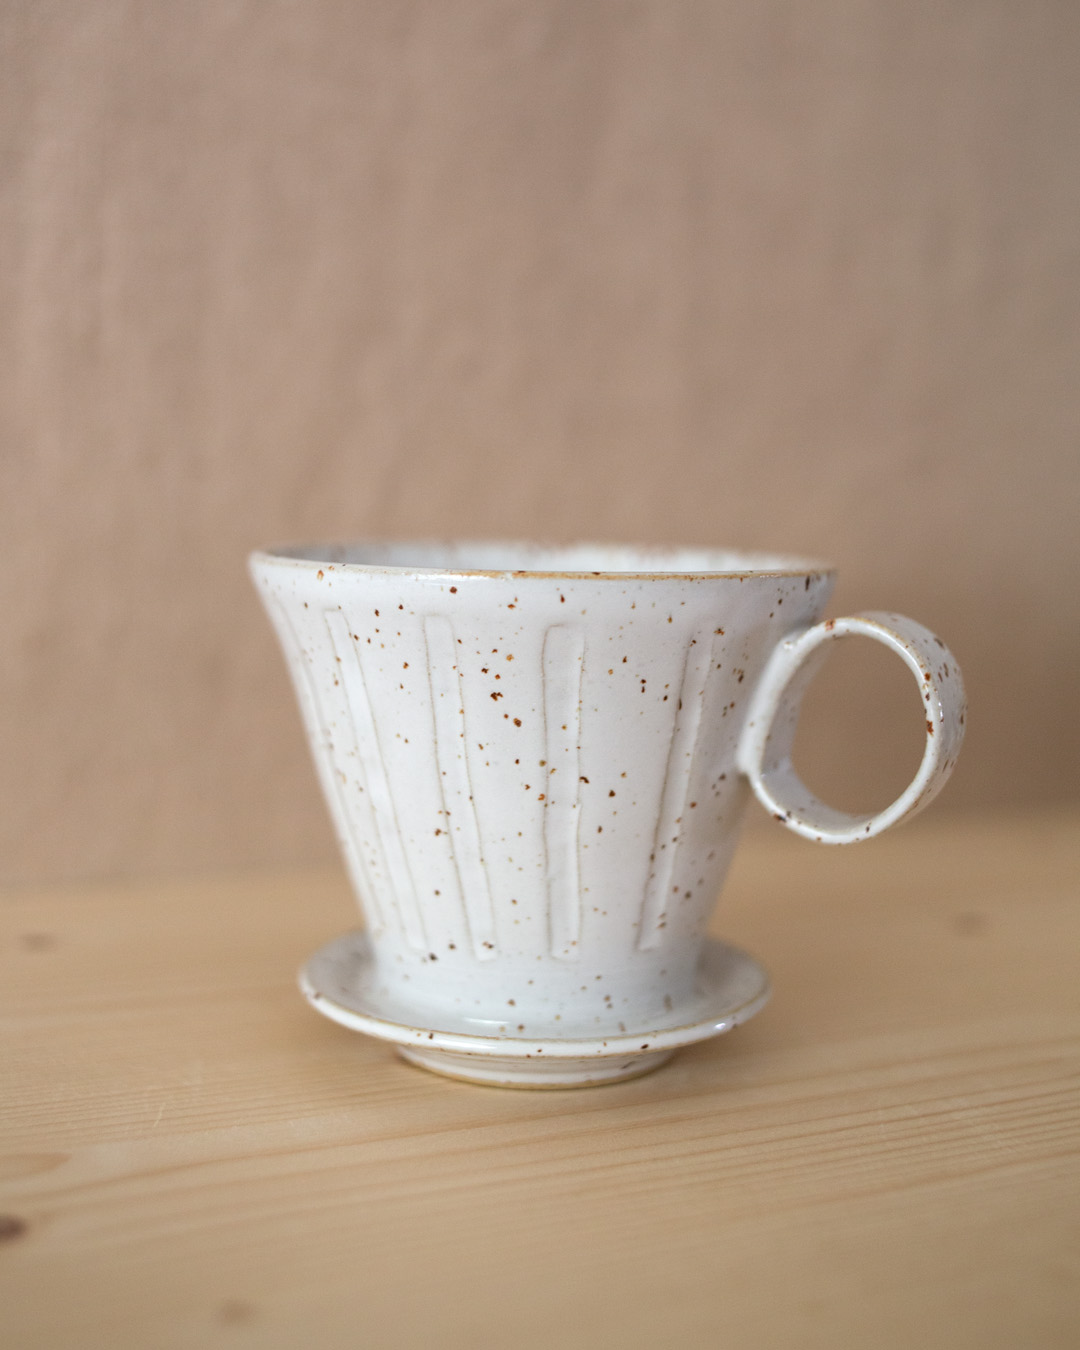 Coffee dripper – Snäckskal by Emelie Zetterberg